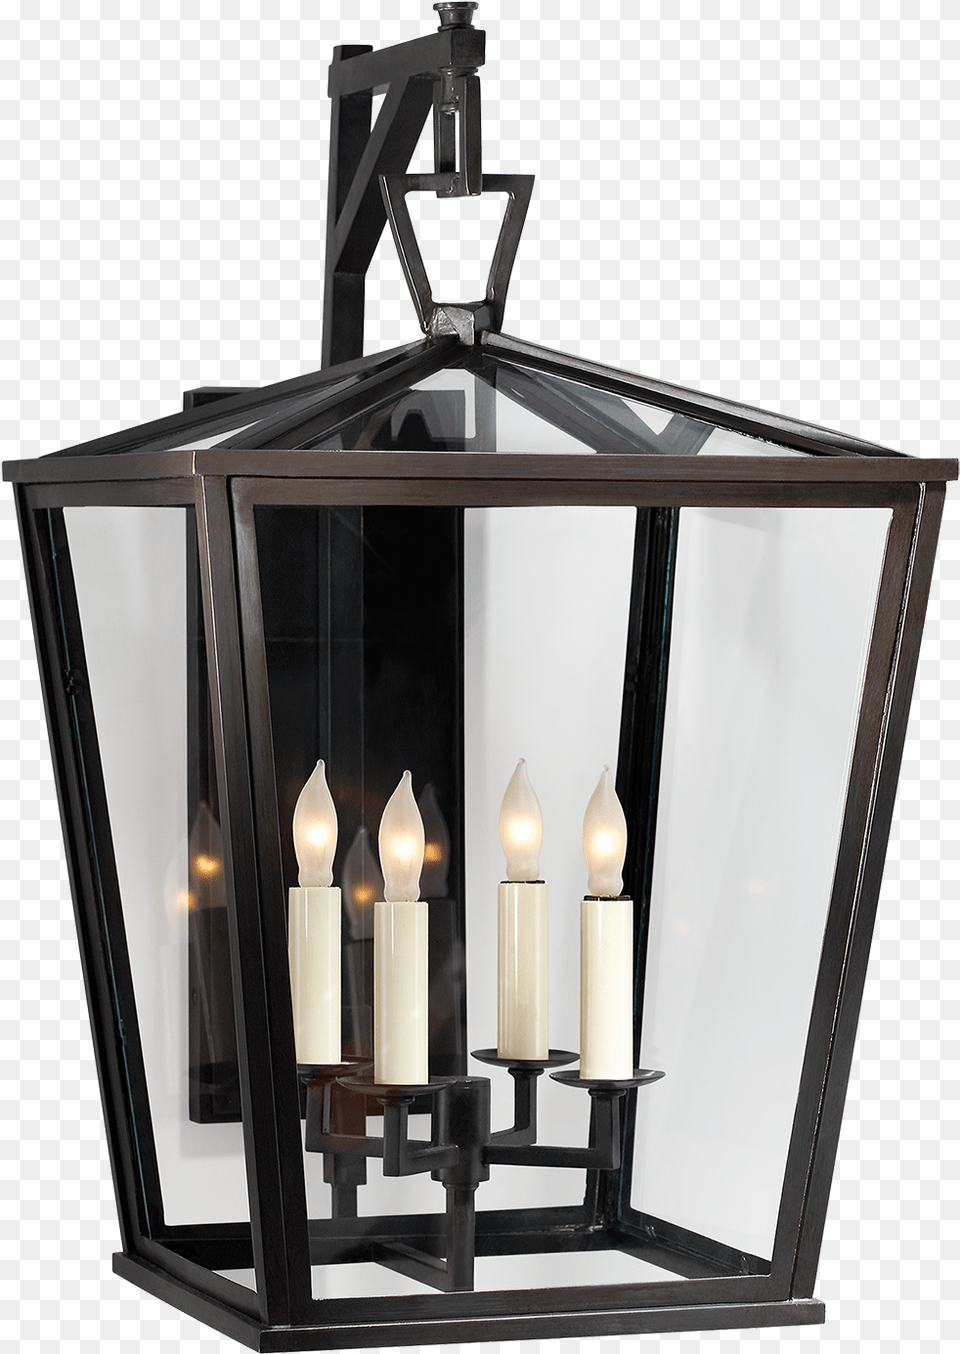 Download Decorative Lantern Images Free Hq Bracket Lantern Lighting, Lamp, Candle Png